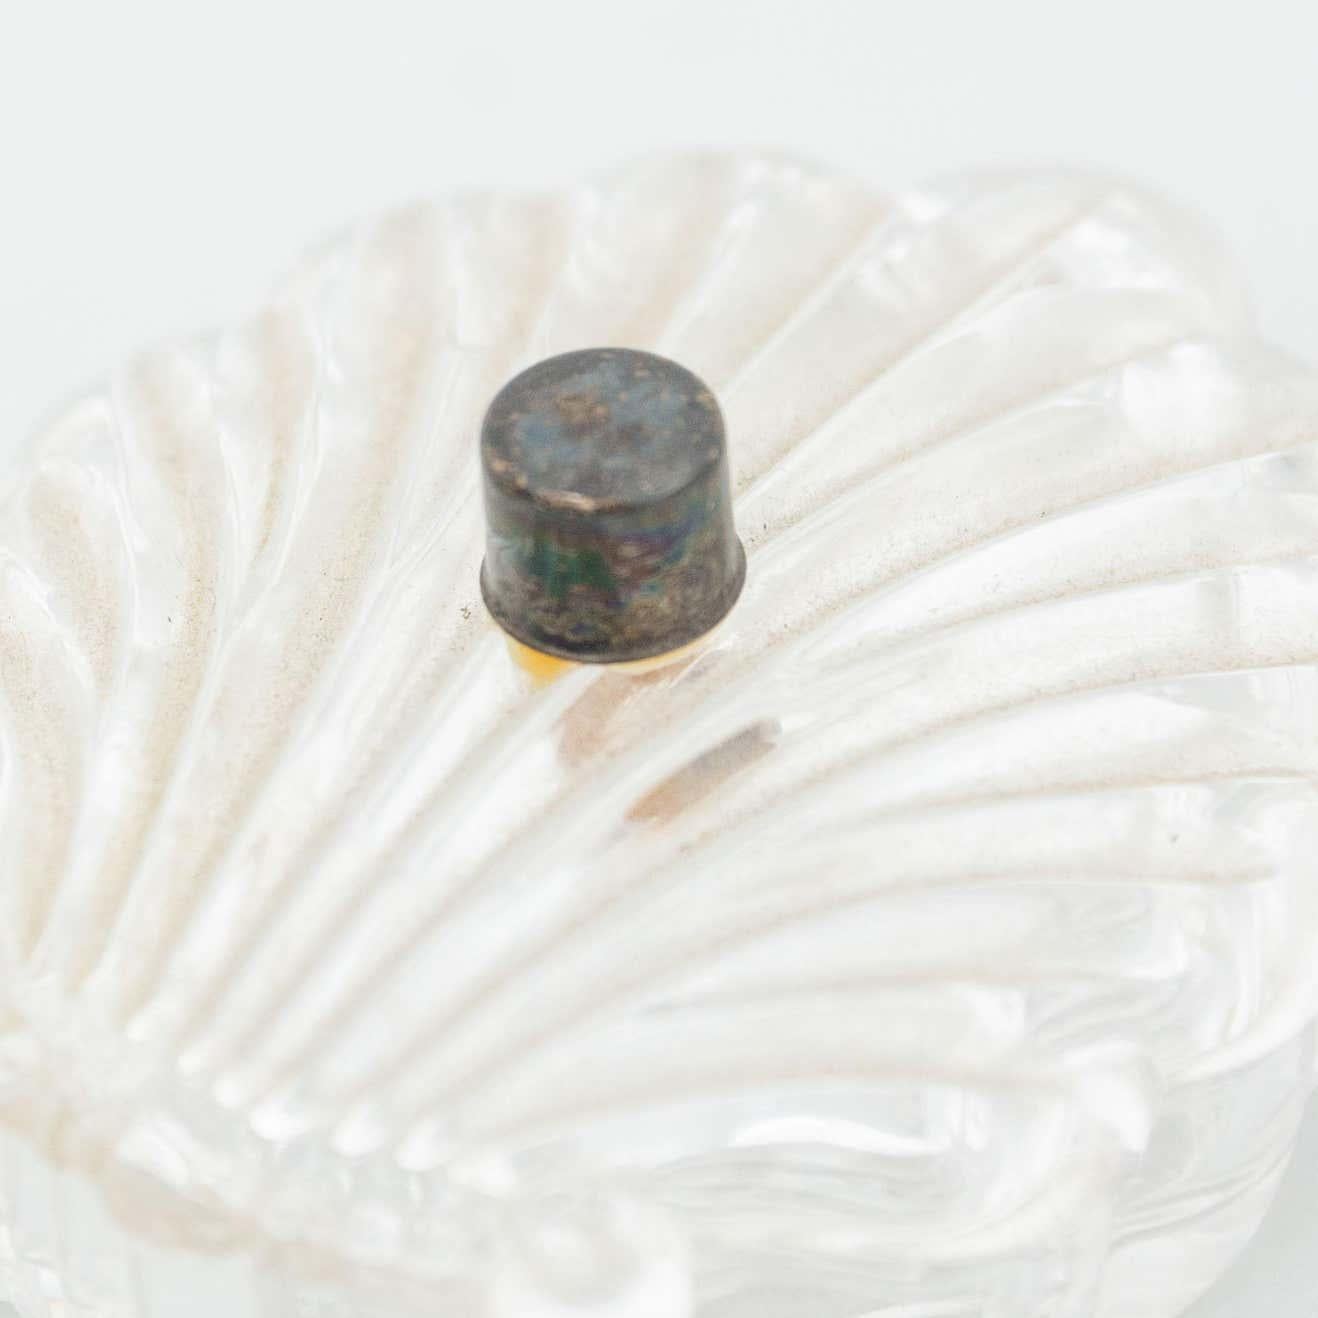 Boîte à bijoux en cristal de coquille.
Par un fabricant inconnu de France, début du 20e siècle.

En état d'origine, avec une usure mineure conforme à l'âge et à l'utilisation, préservant une belle patine.

Matériau :
Verre

Dimensions :
 D